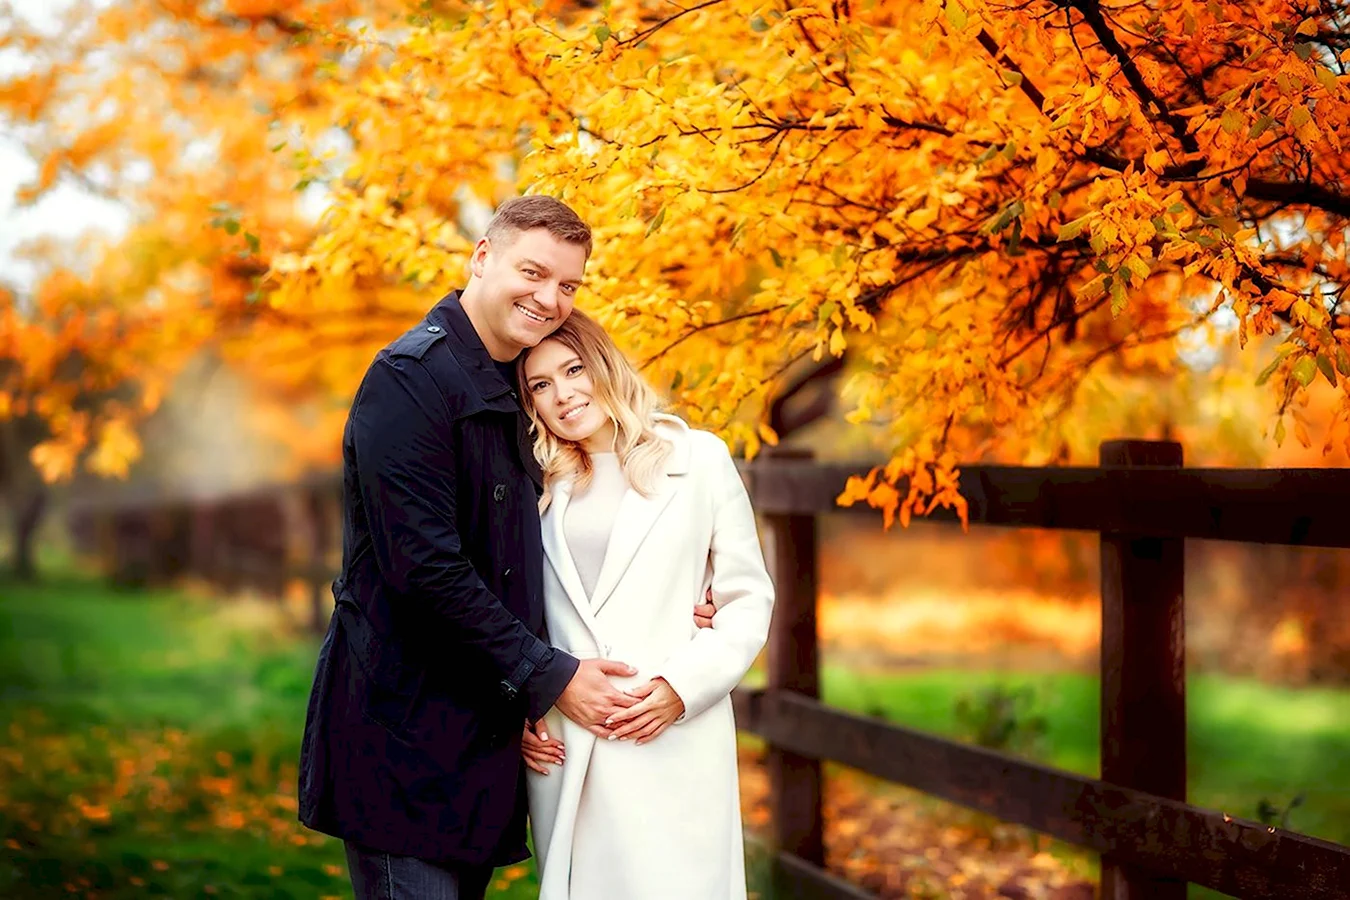 Осенняя фотосессия беременной с мужем